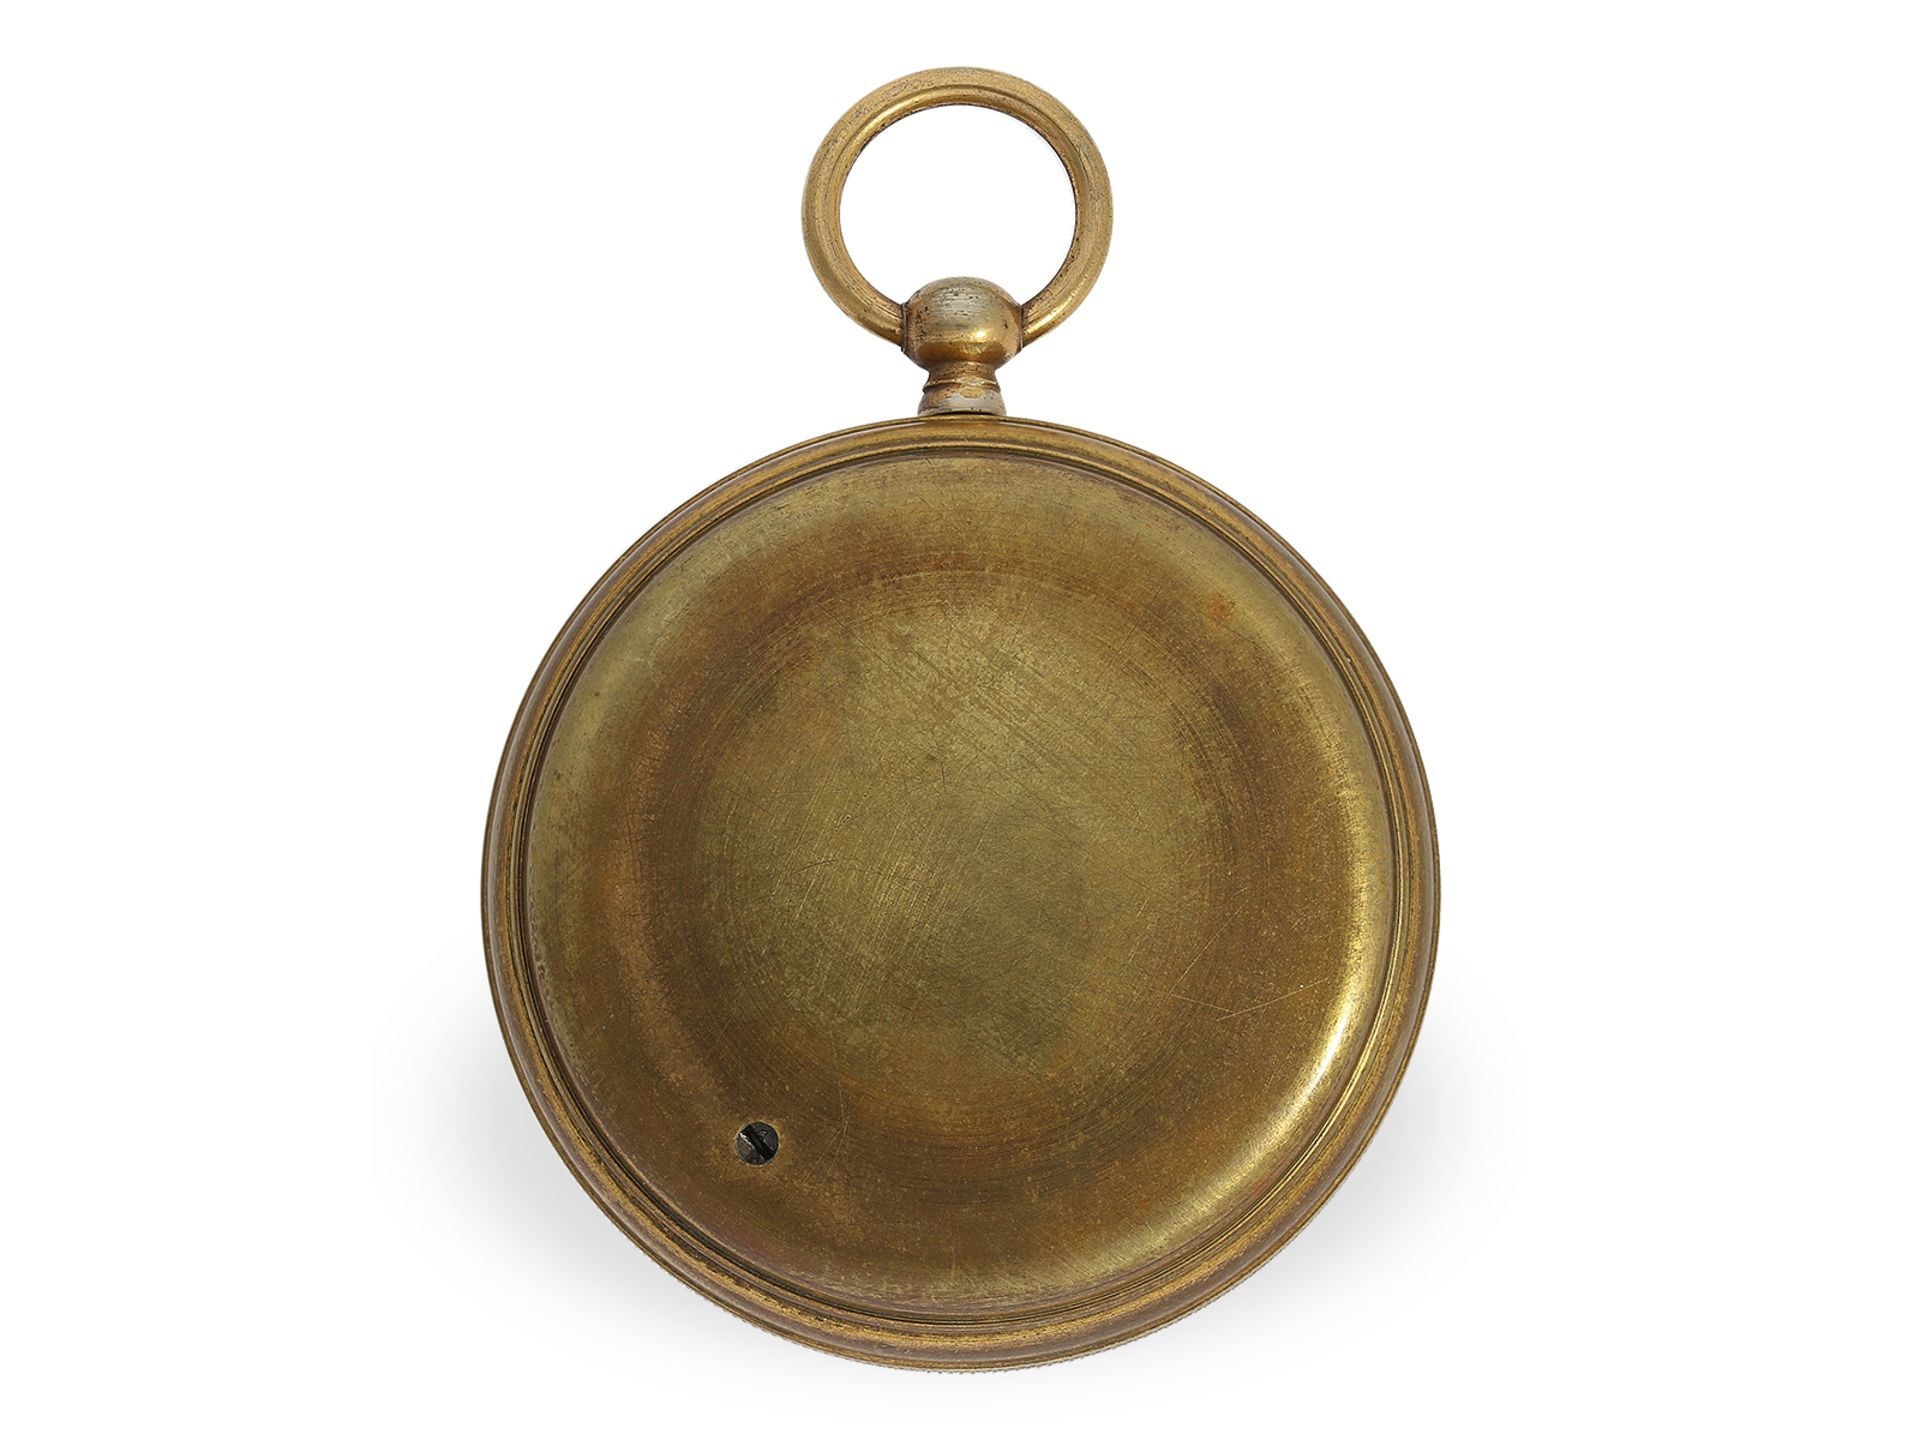 Rare pocket barometer with original box, Breguet No.8996, ca. 1850 - Image 2 of 3